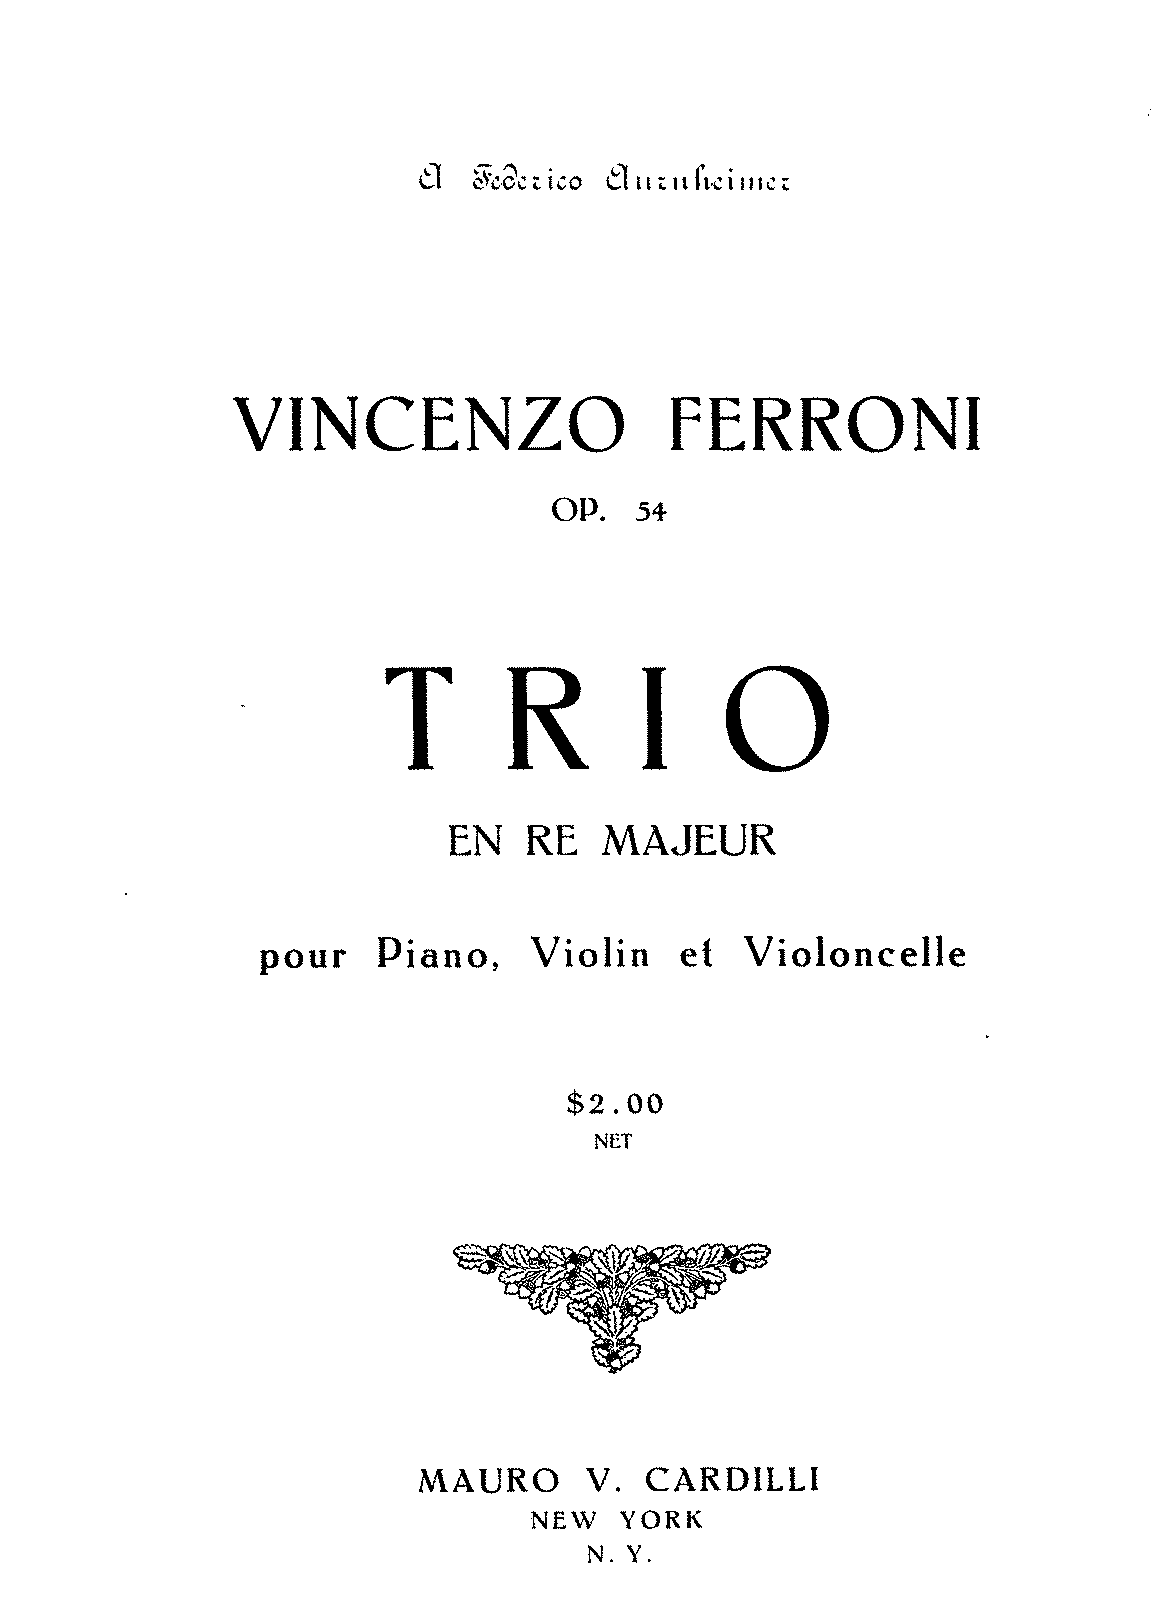 Piano Trio, Op.54 (Ferroni, Vincenzo) - IMSLP